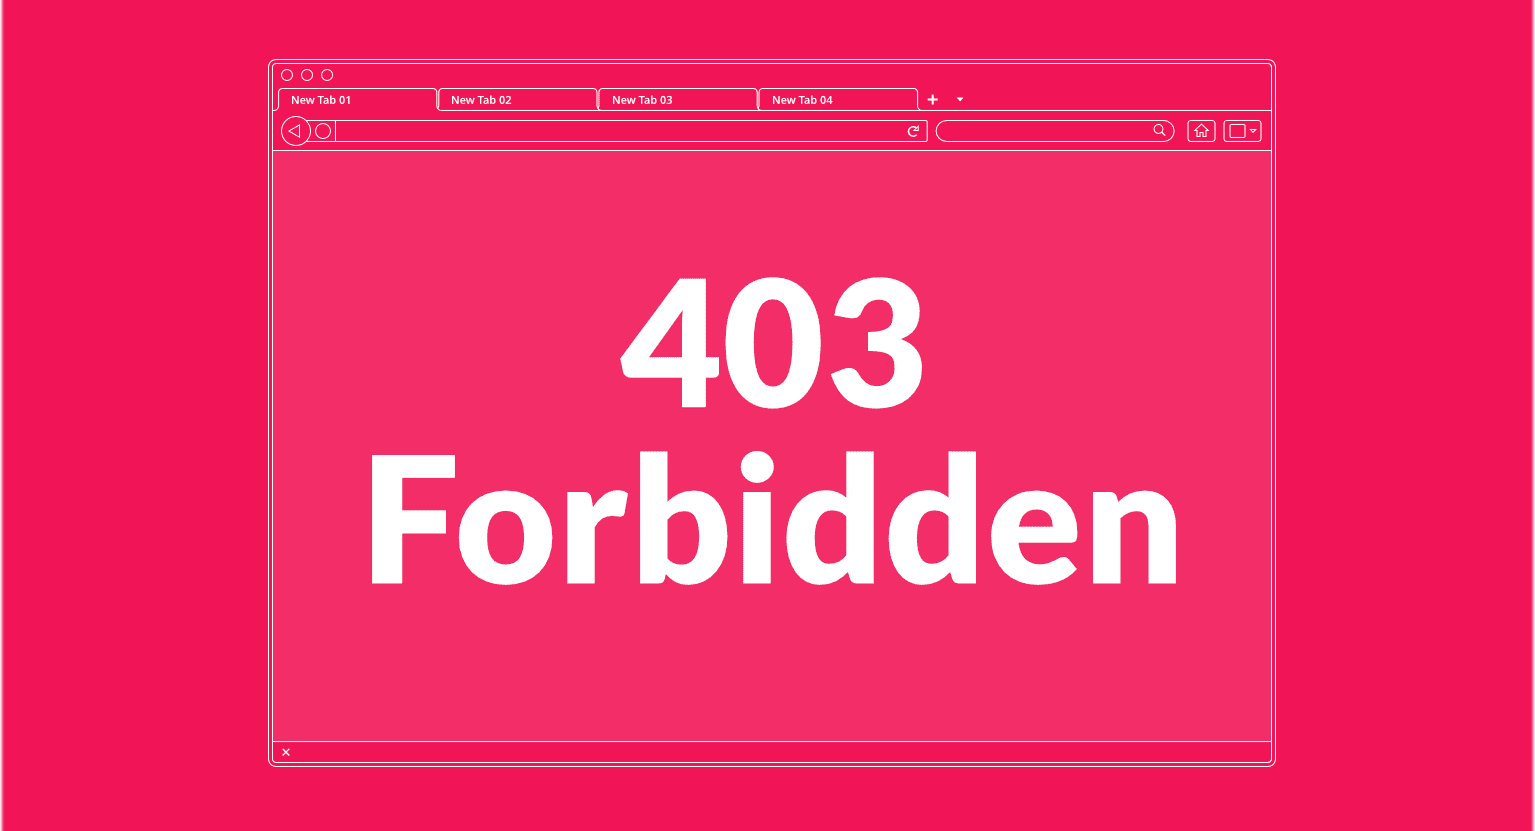 How to Fix the 403 Forbidden Error in WordPress